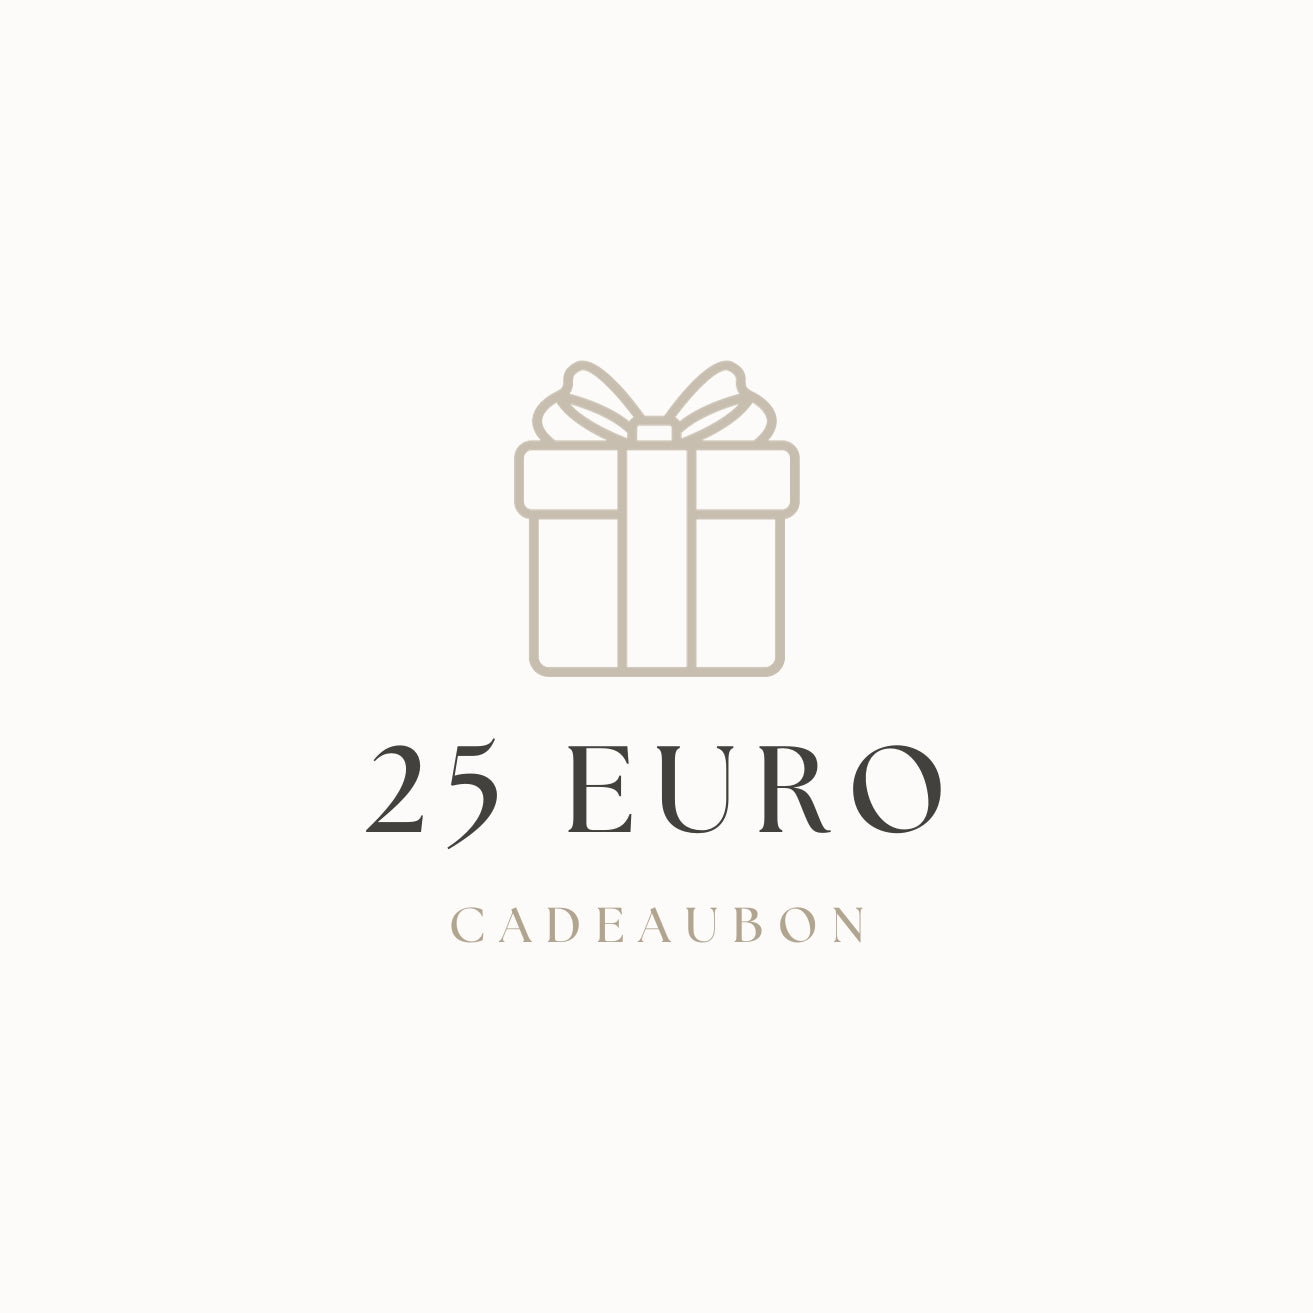 Chèque cadeau | 25 euros